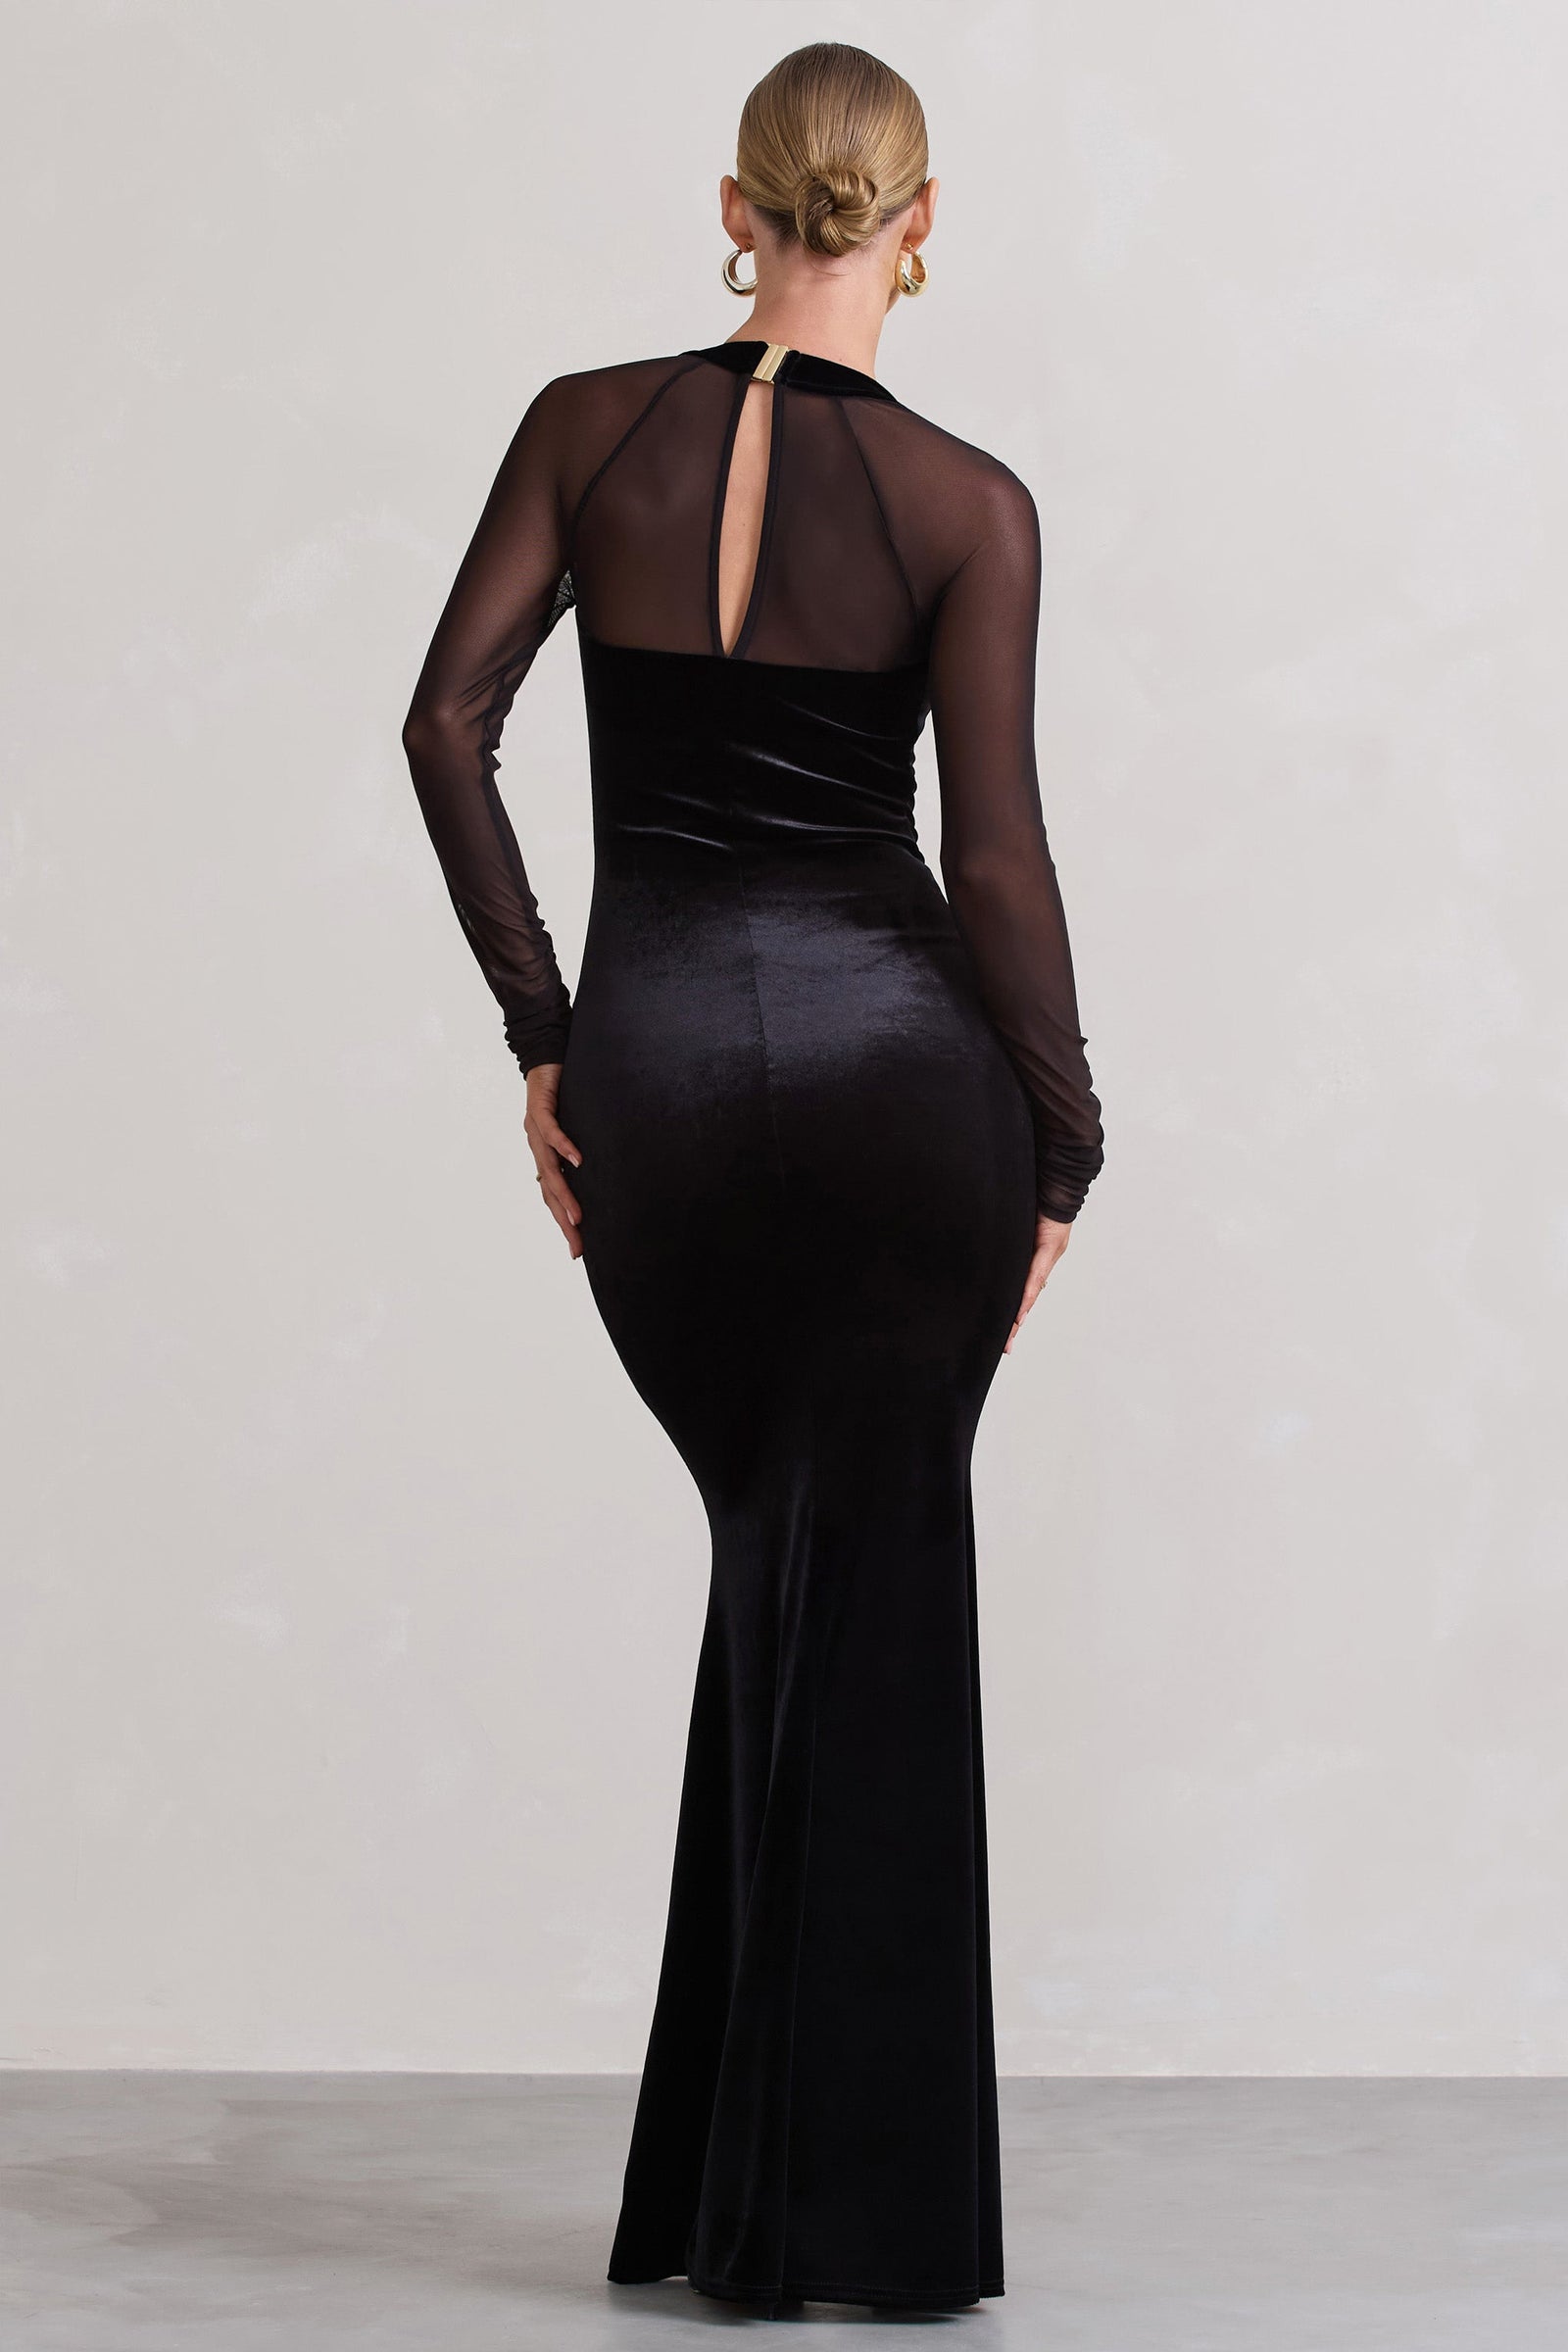 Law of Attraction Black Bardot Draped Split Maxi Dress – Club L